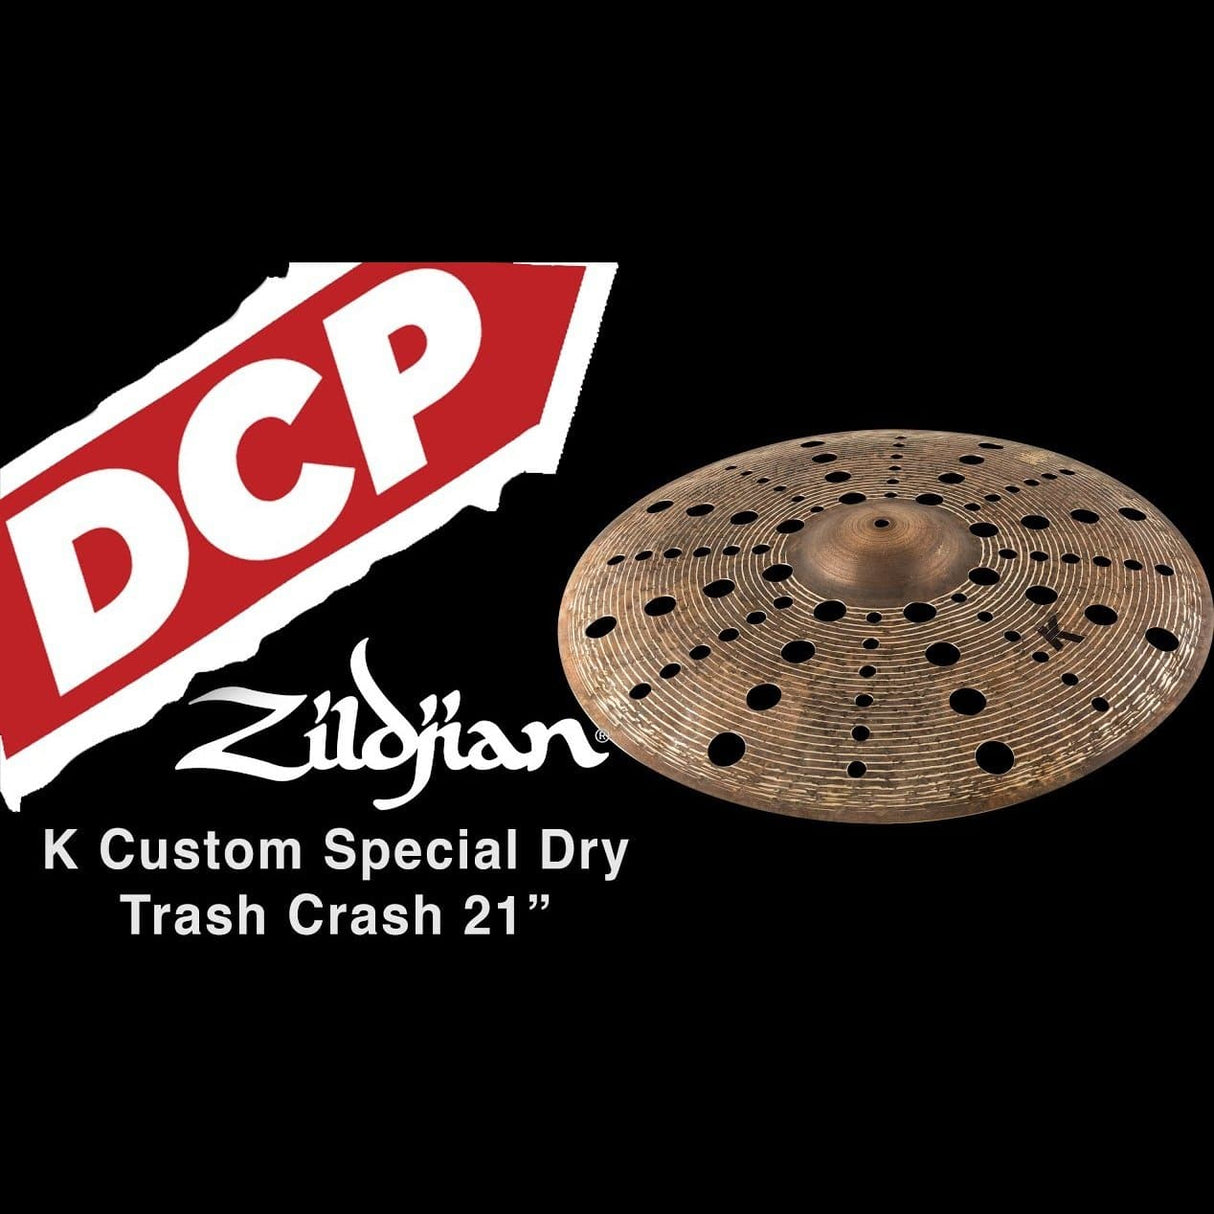 Zildjian K Custom Special Dry Trash Crash Cymbal 21"